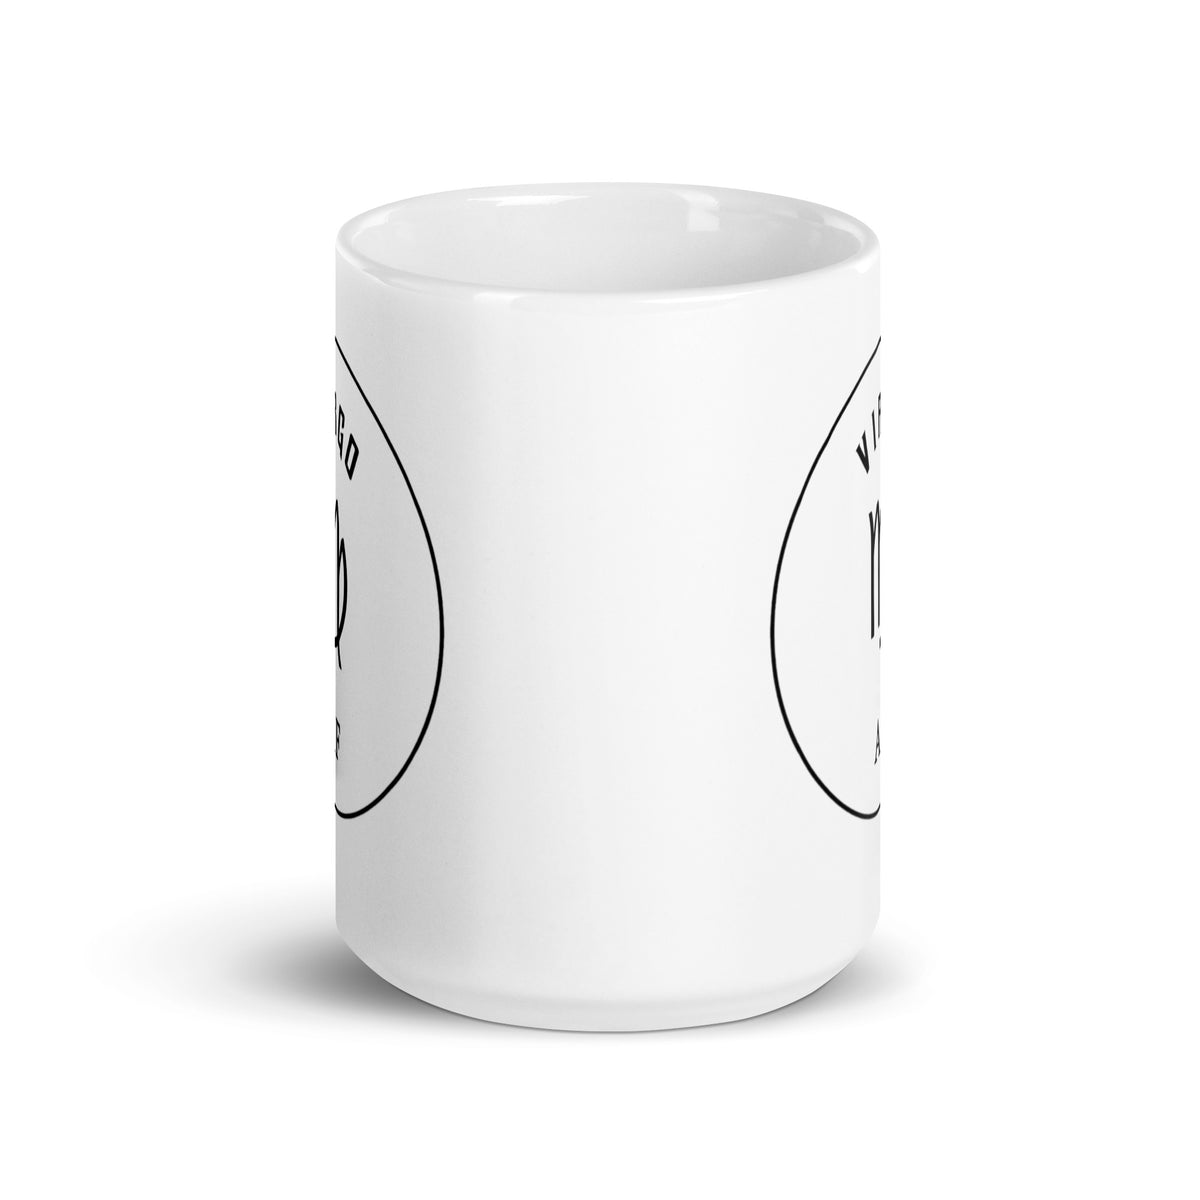 Virgo AF White Glossy Mug